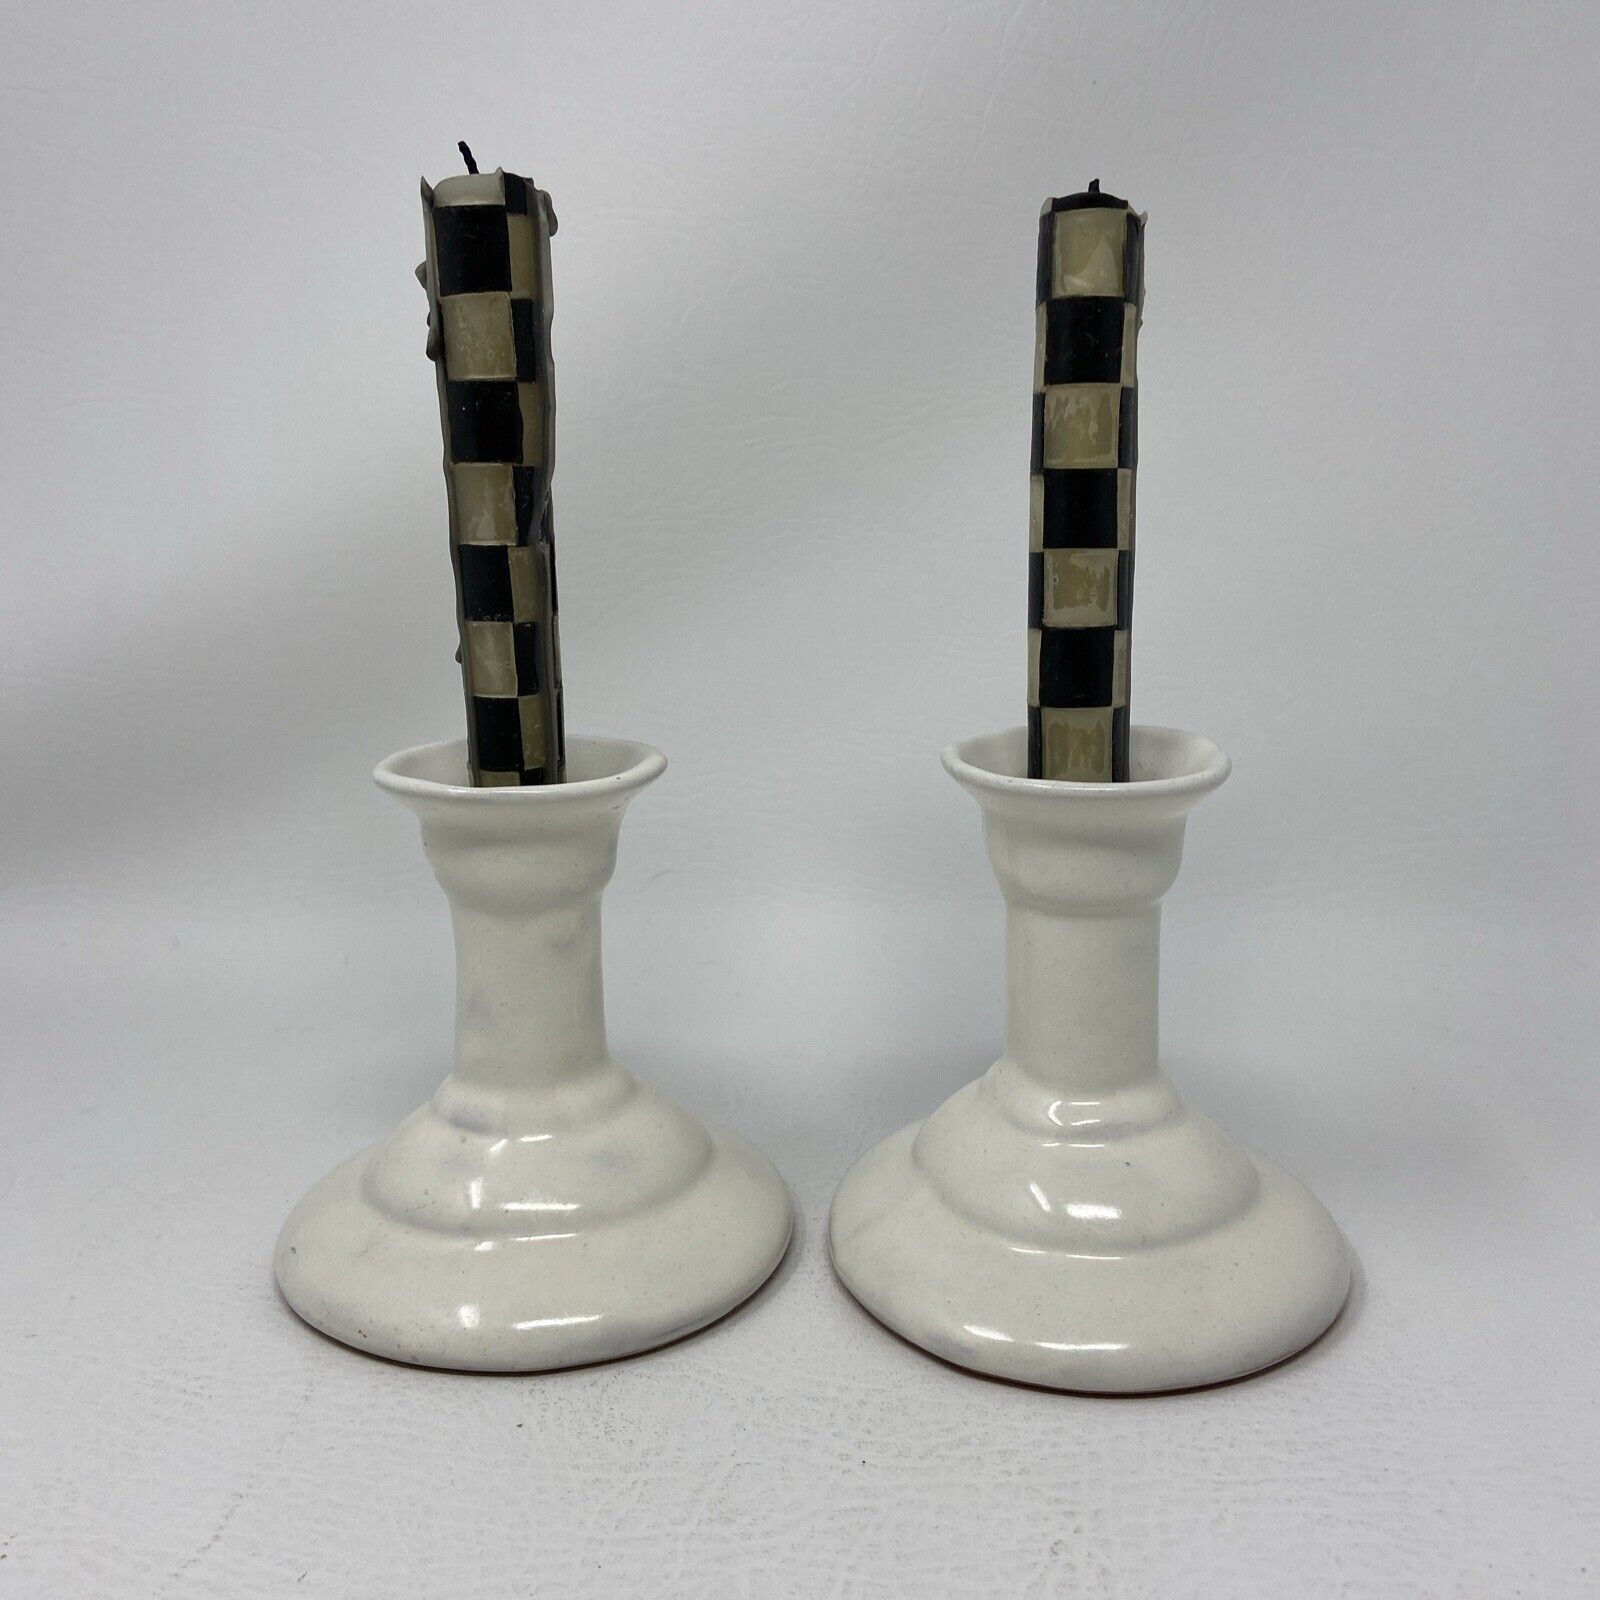 Mackenzie Childs Vintage Pair of White Ceramic Hand Thrown Candlesticks 4.25”